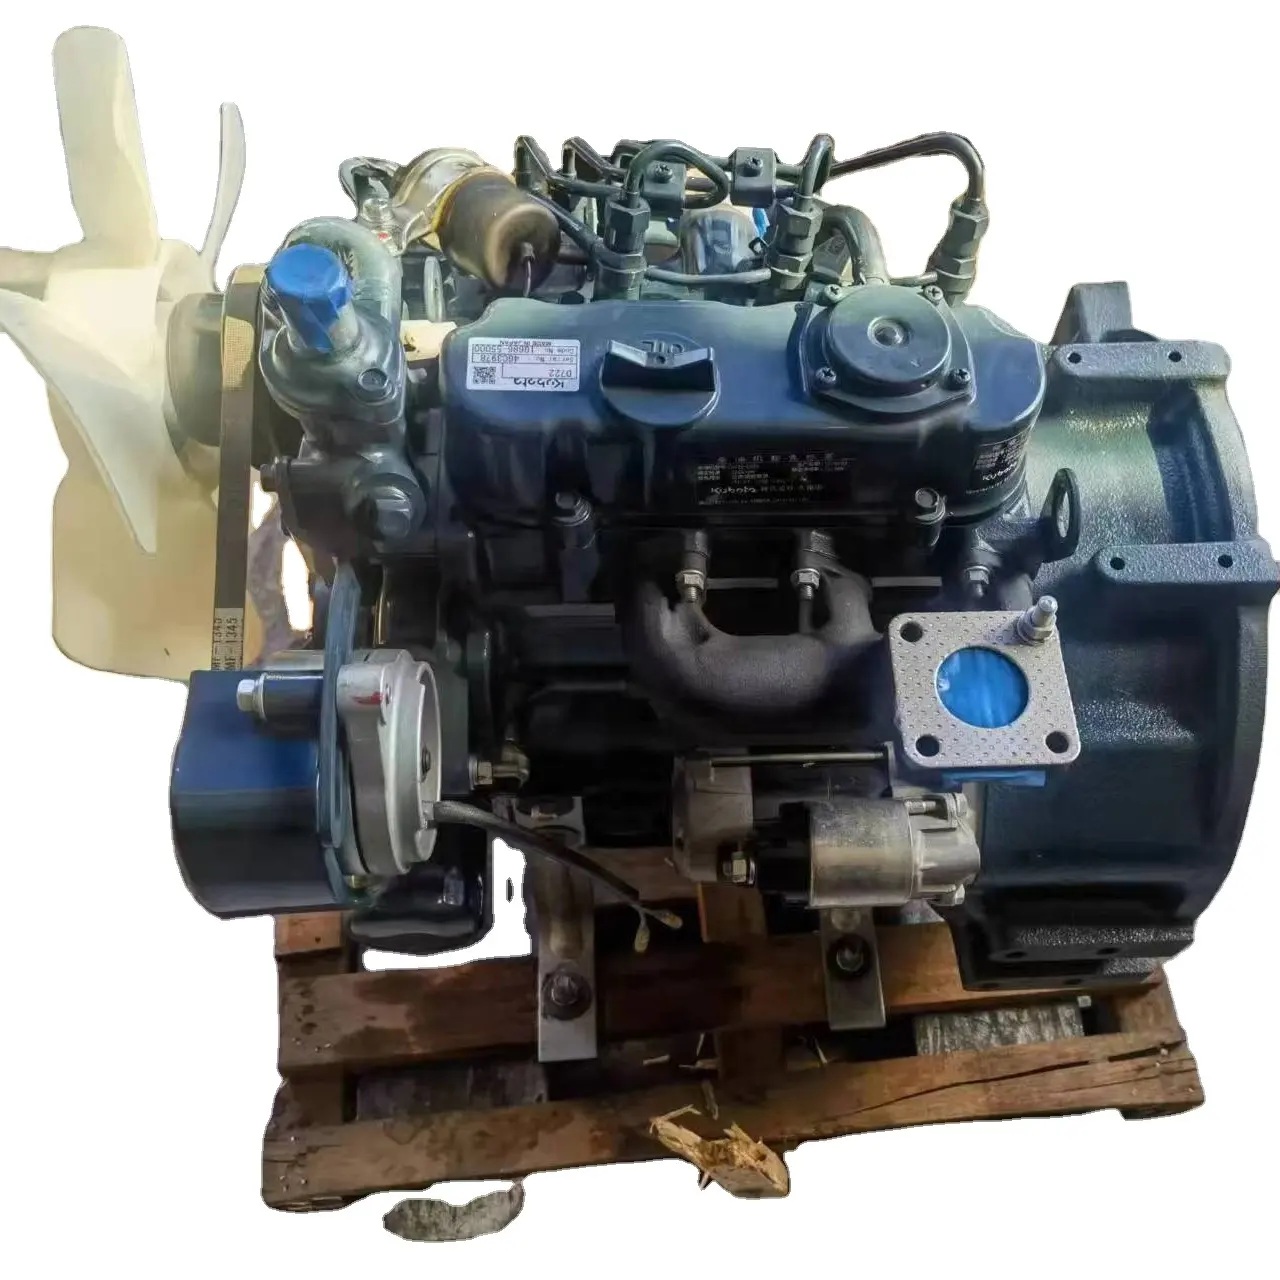 Conjunto original do motor diesel Kubota D722 Motor Motor Escavadeira Diesel Motor Completo